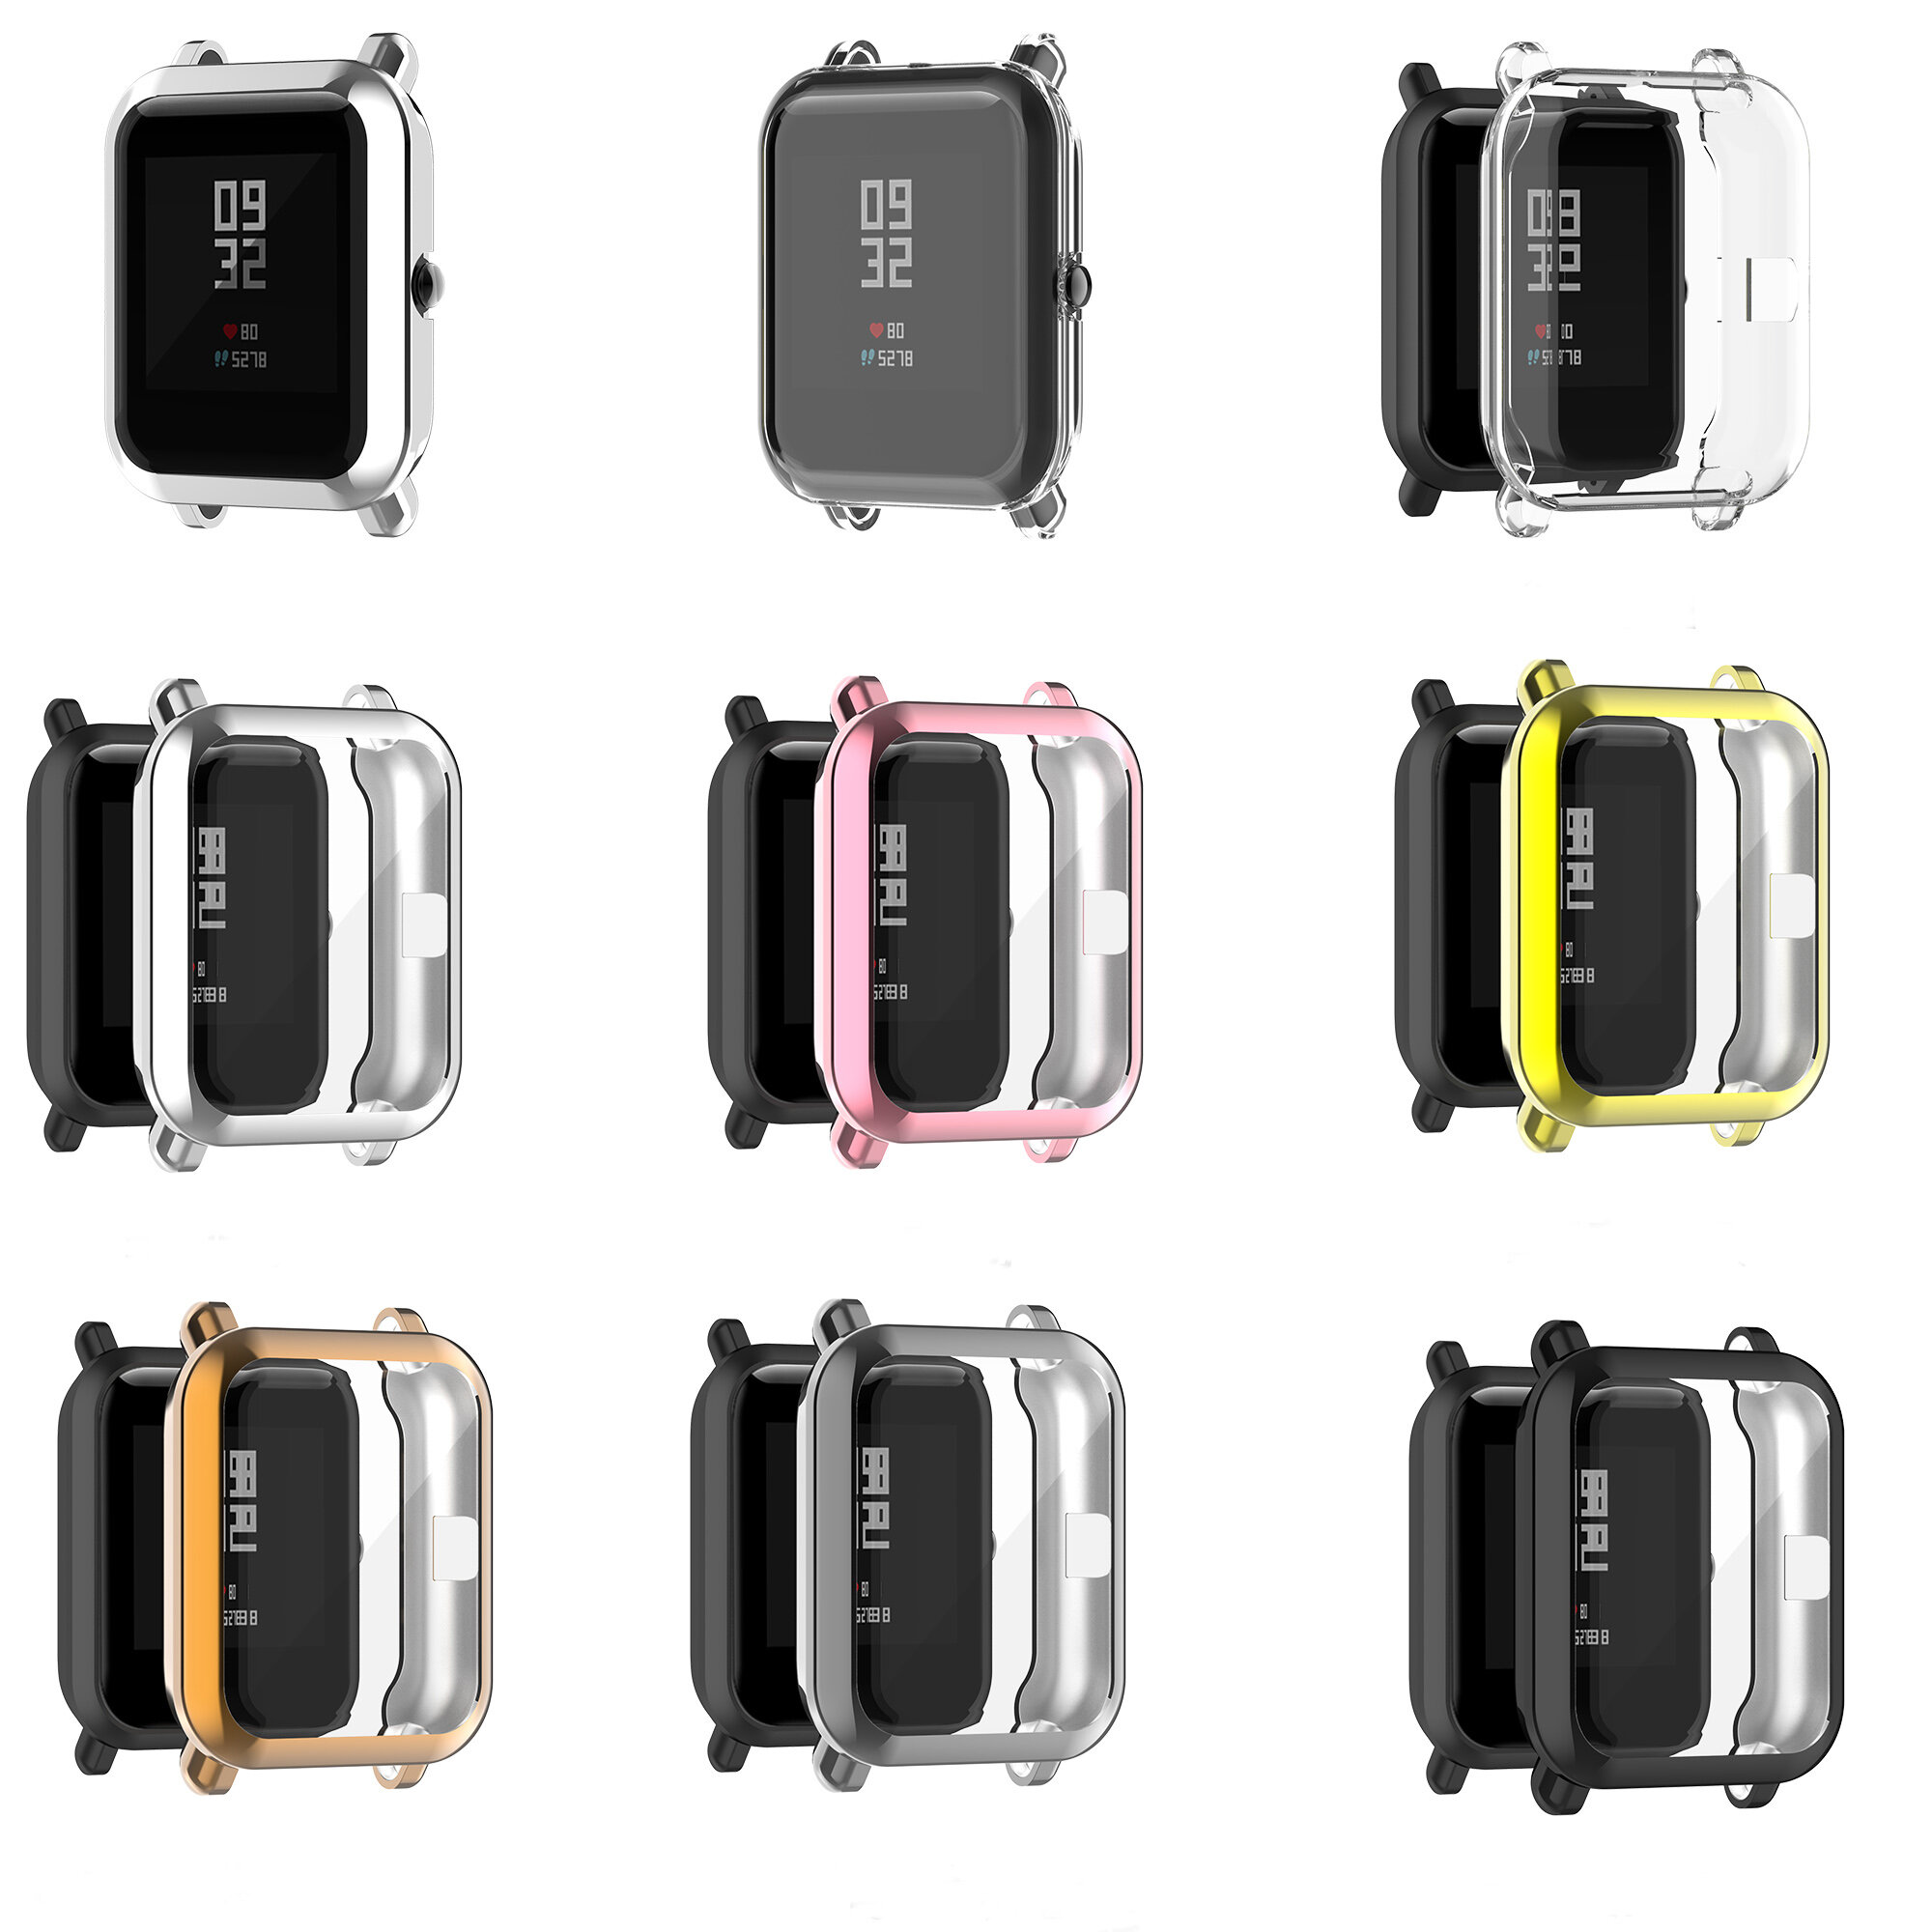 Bakeey Galvaniseren All-inclusive TPU Watch Case Cover Horlogebeschermer voor Amazfit bip / bip lite